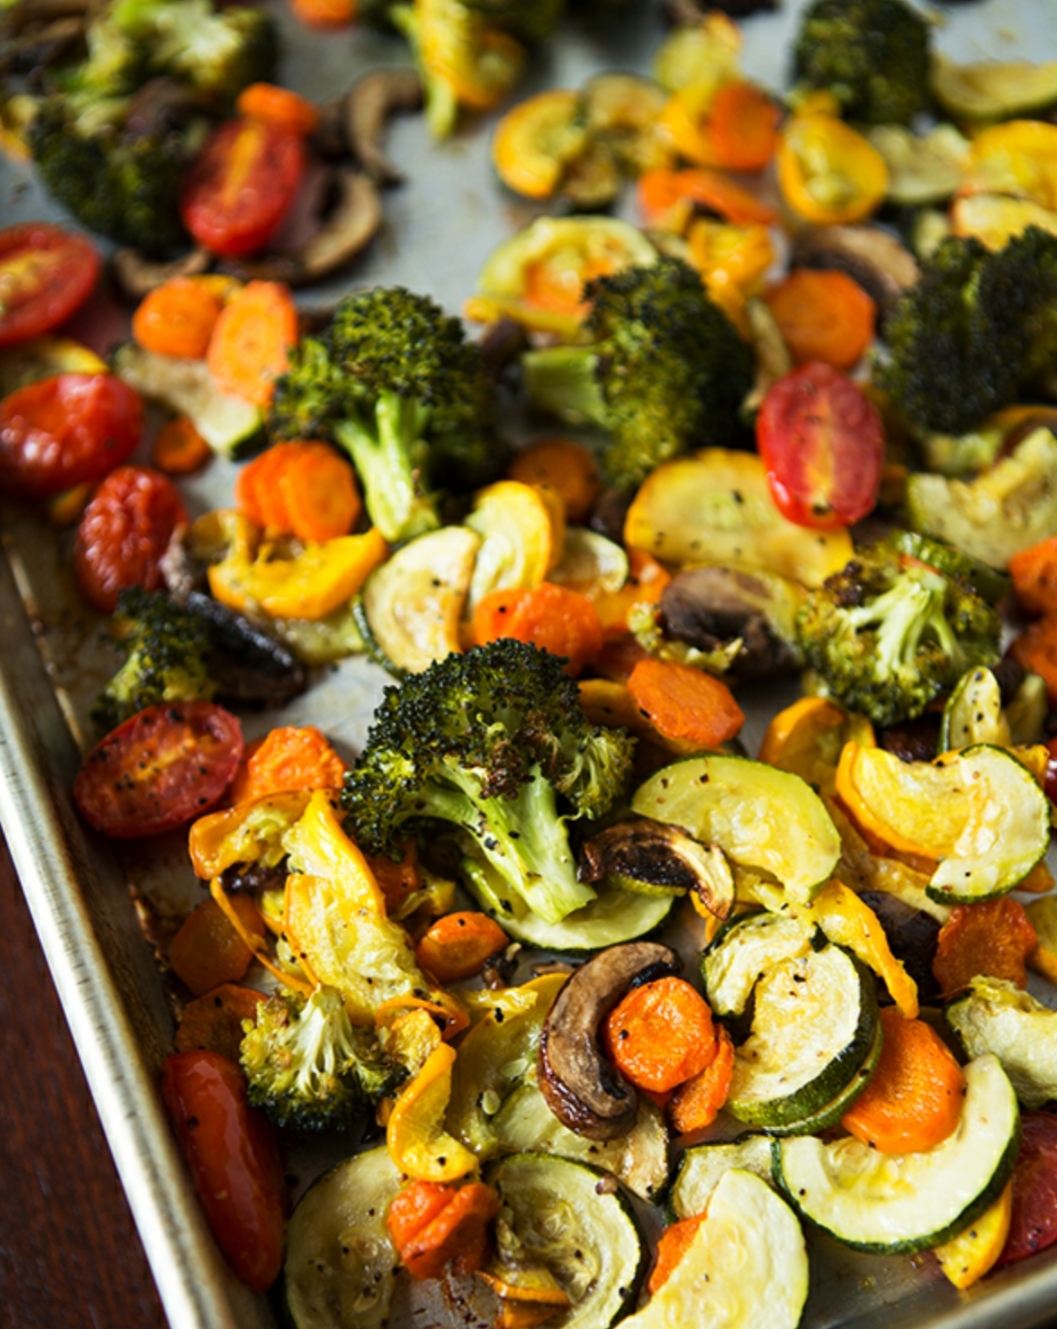 Roasted vegetables. Овощи в духовке. Печеные овощи. Вкусные овощи в духовке. Печёные овощи в духовке.